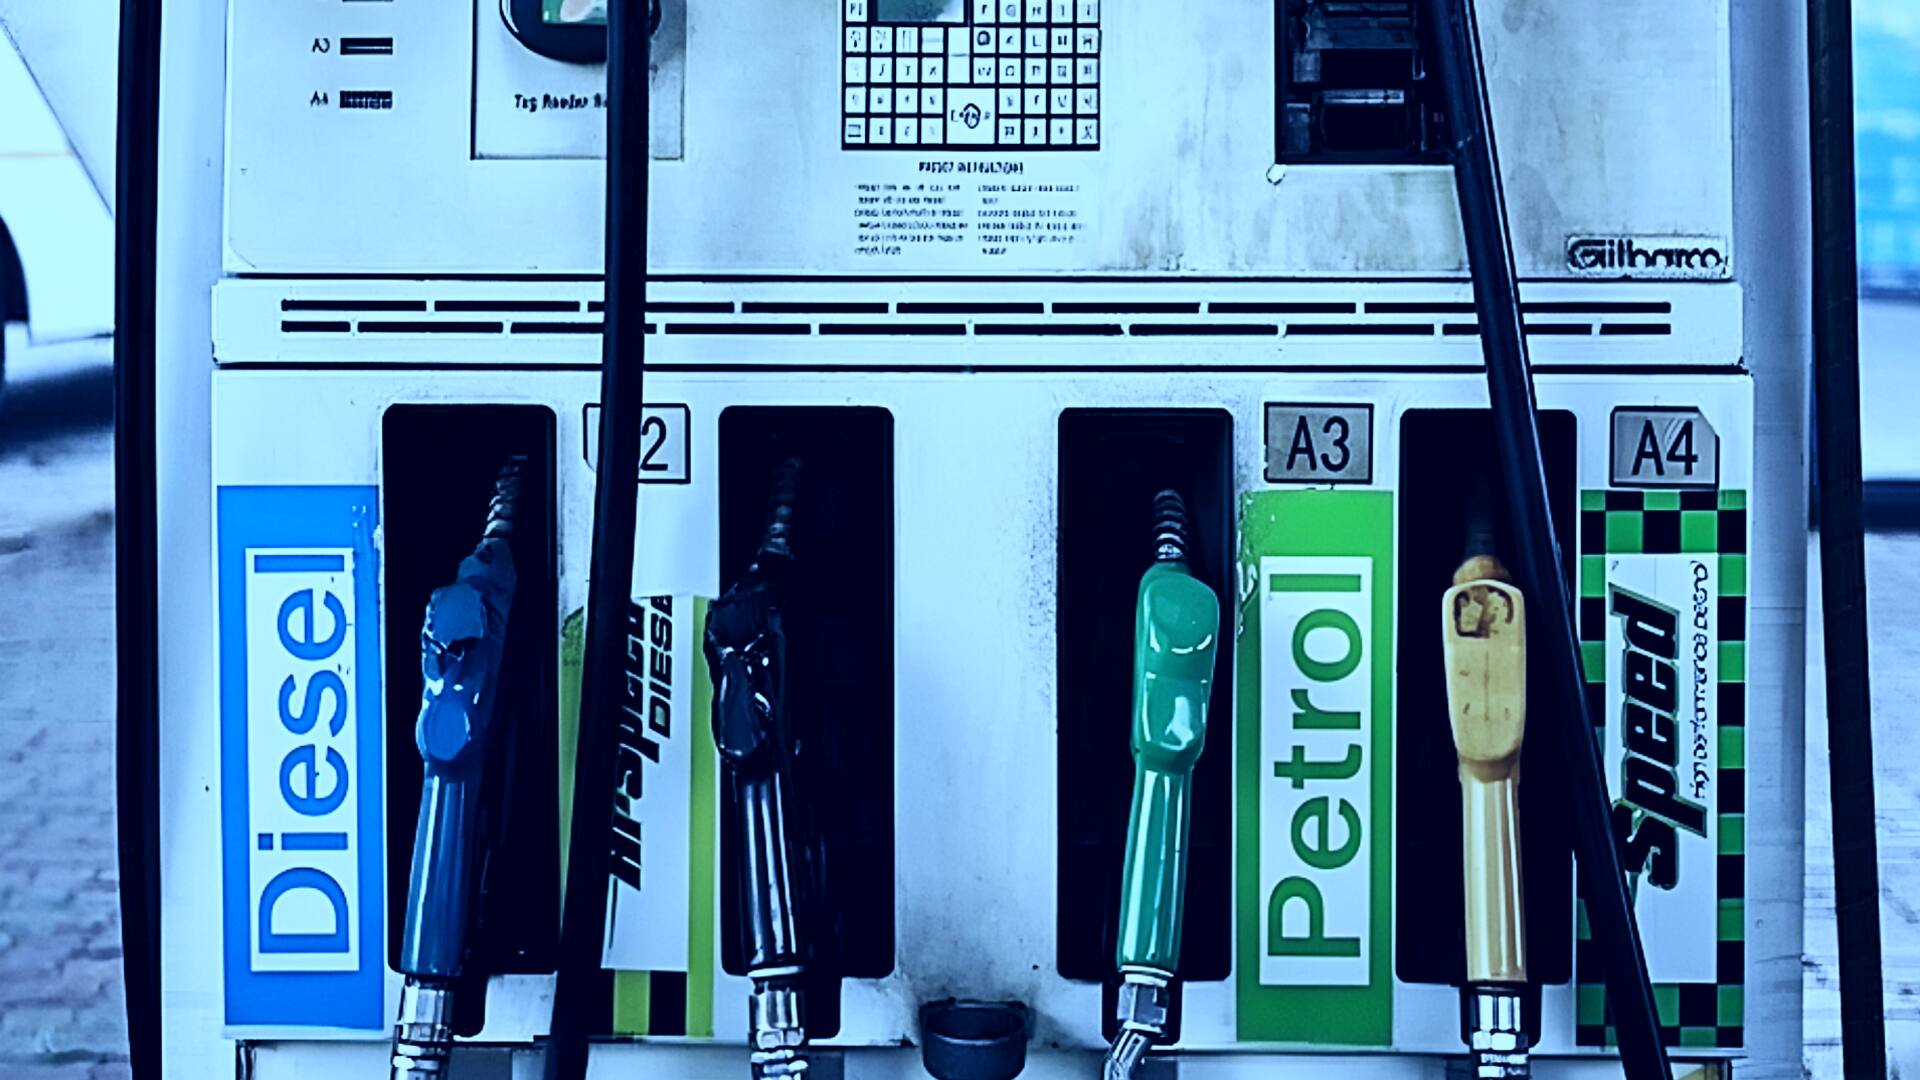 पेट्रोल-डीजल के भाव: 21 फरवरी की ताजा कीमत जारी, जानिए कहां-कितने बदले 